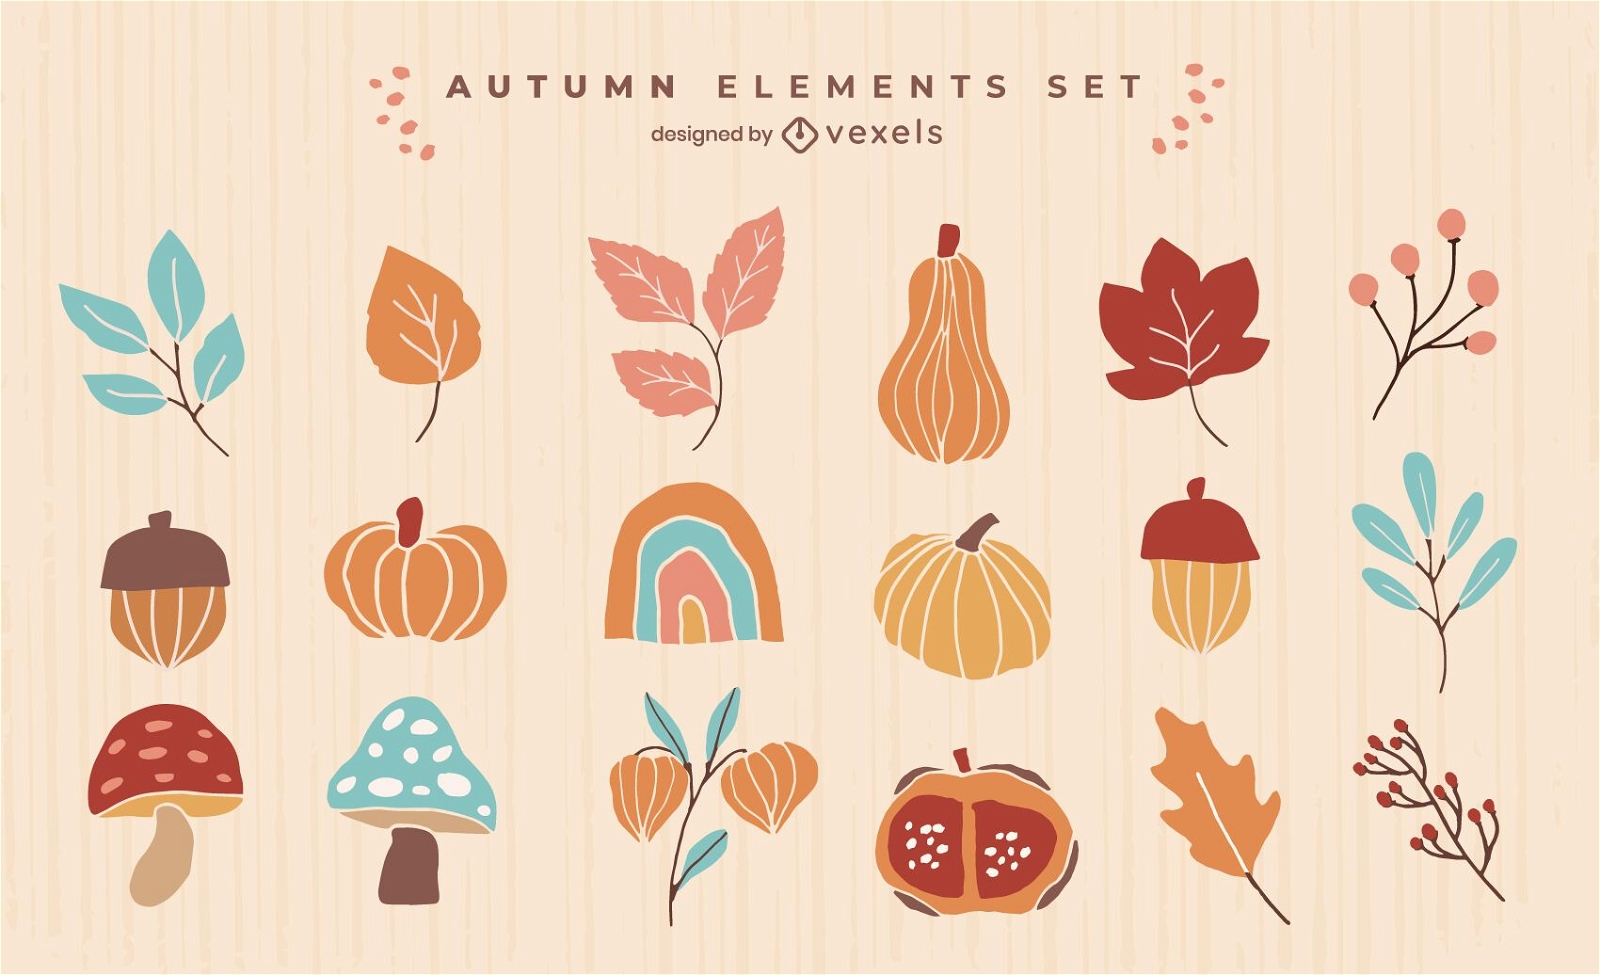 autumn elements collection set